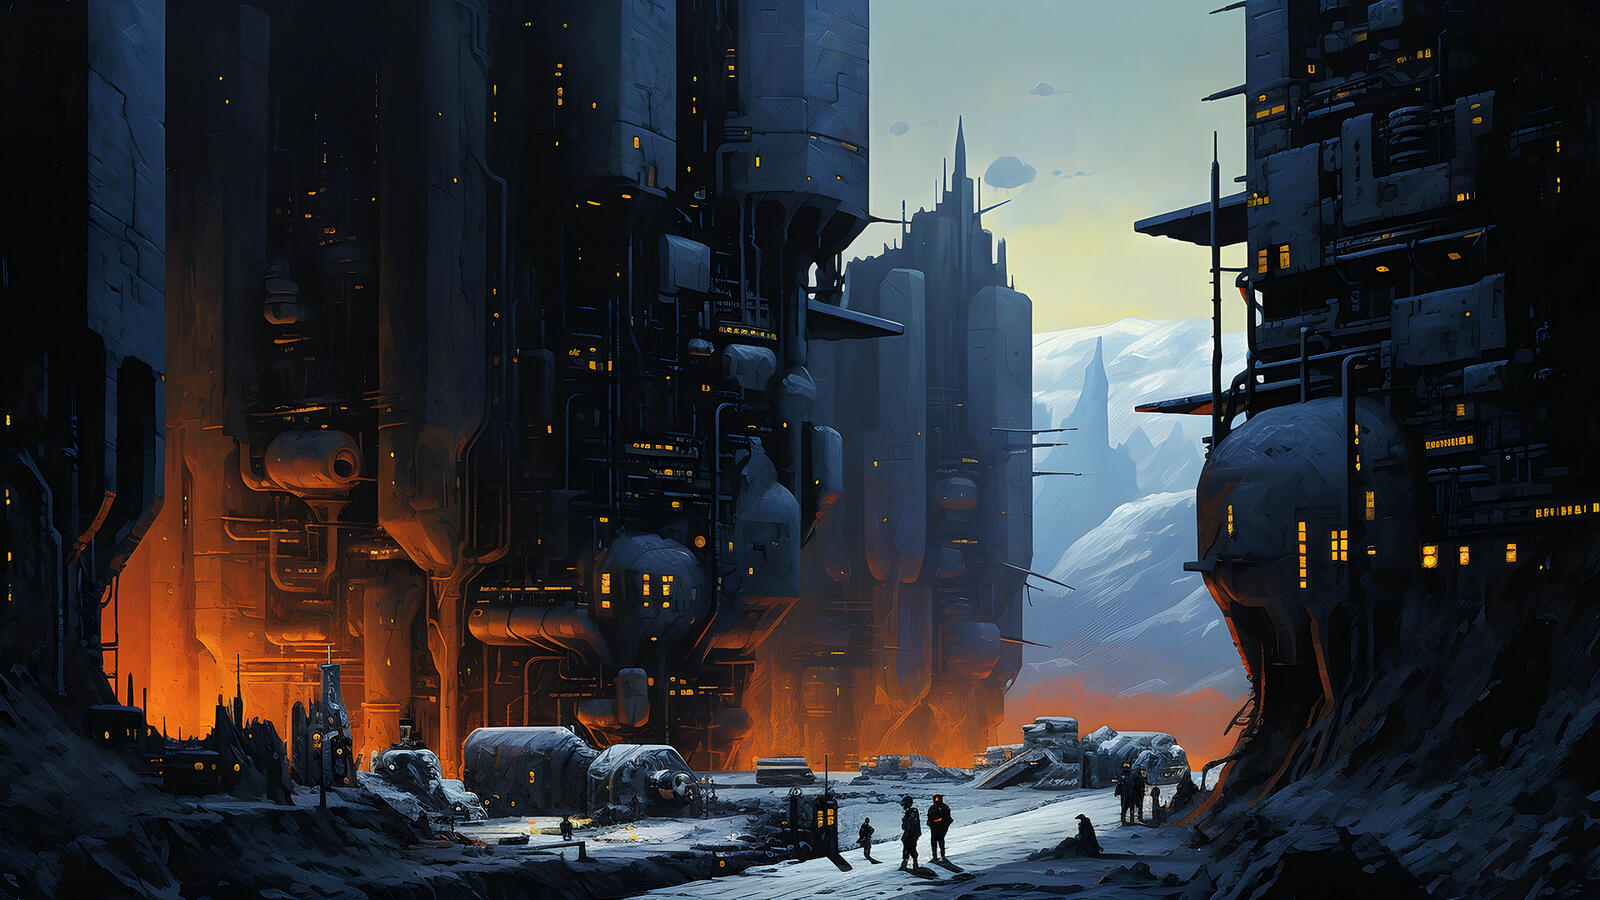 Бесплатное фото Фантастический металлический город в ущелье и люди рядом с ним